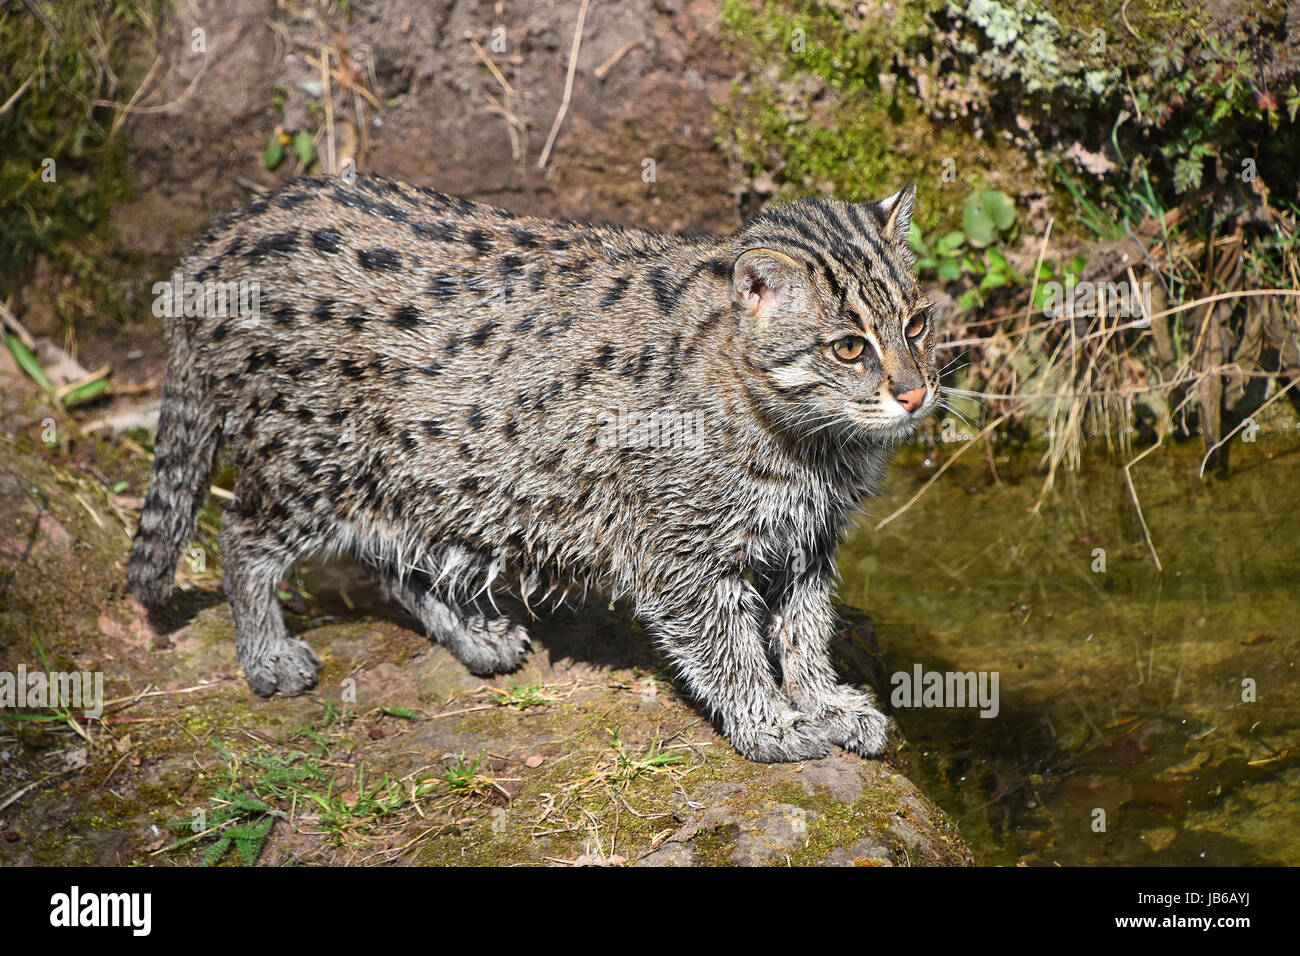 Fischen-Katze (Prionailurus Viverrinus) jagen und beobachten die Fische im Wasser, erhöhte Ansicht Stockfoto